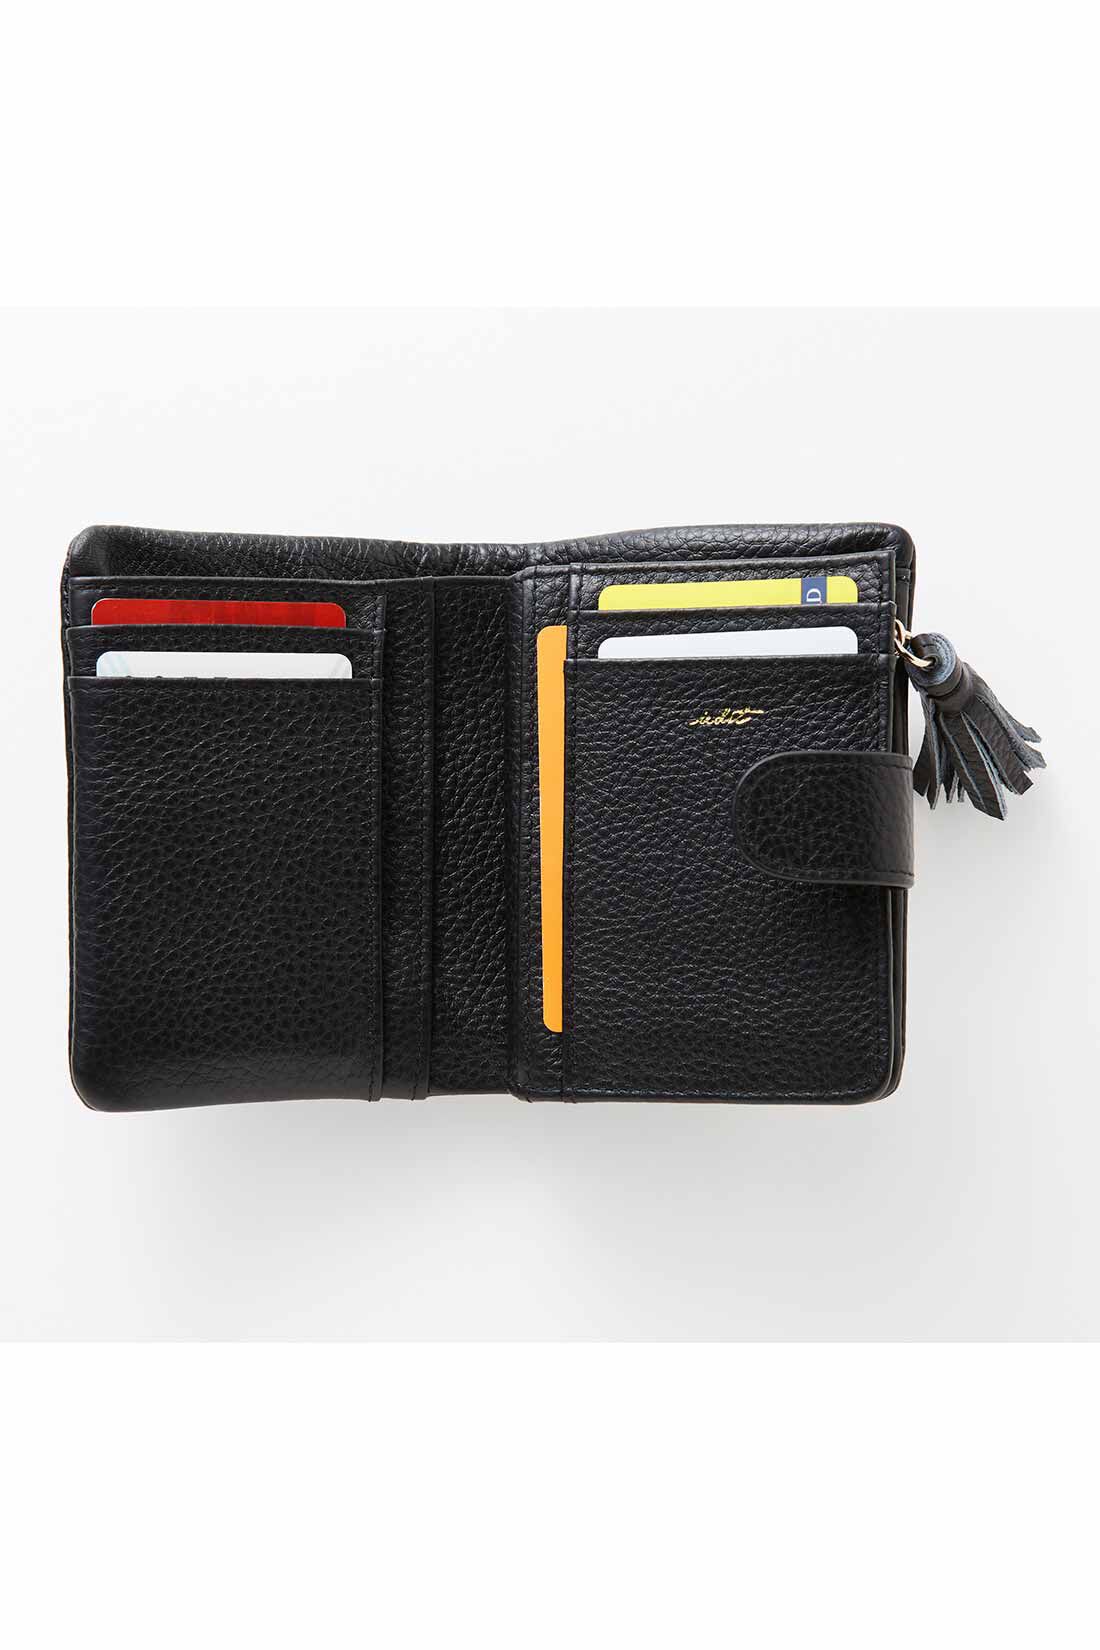 イディット|IEDIT[イディット]　くったり本革素材できれいめ二つ折り財布〈オレンジ〉|カードはたっぷり8枚収納可。